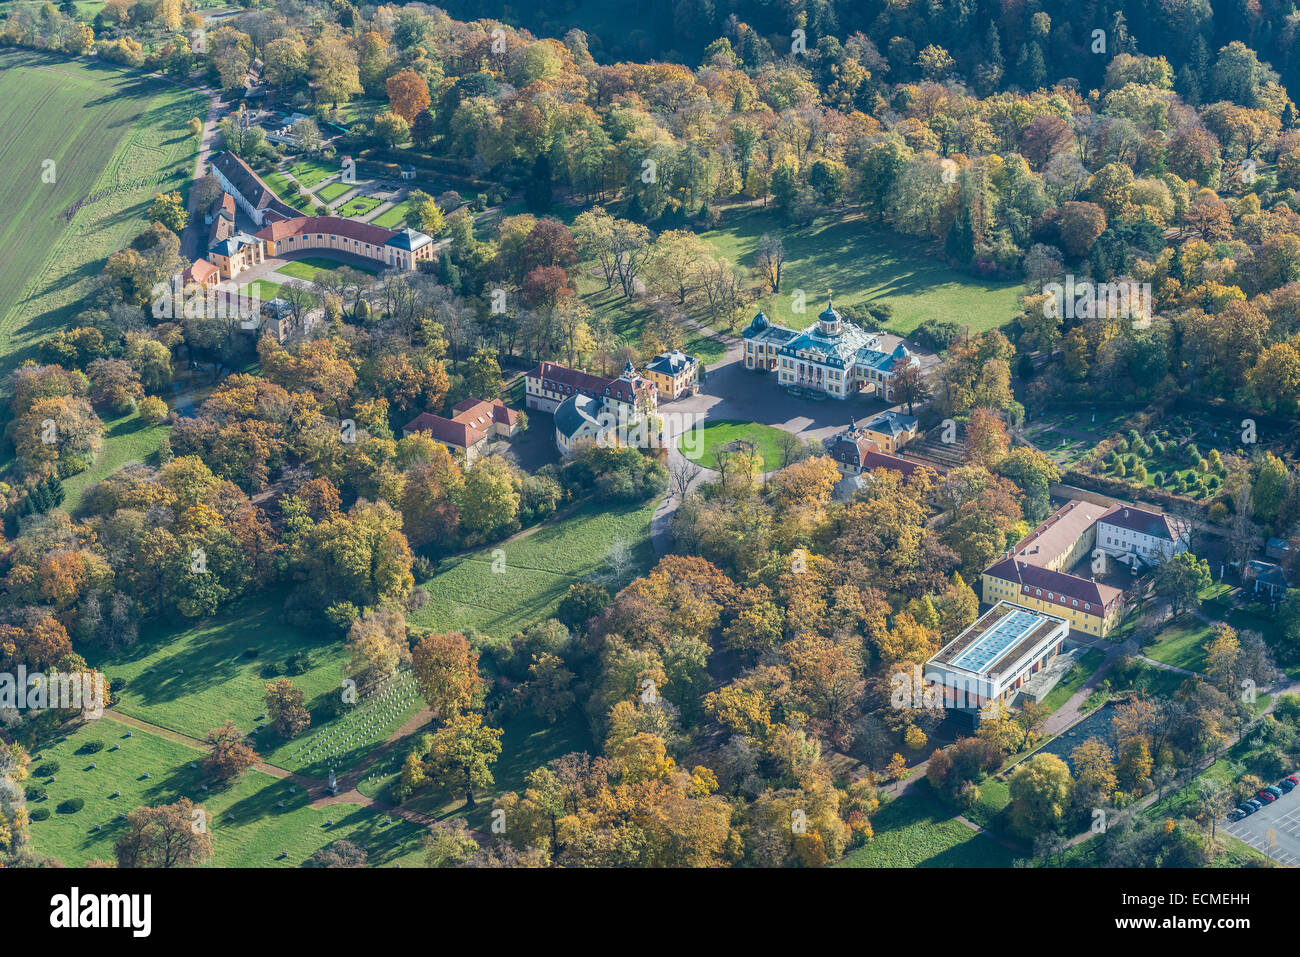 Vista aerea, Schloss Belvedere Palace e motivi, Sito Patrimonio Mondiale dell'UNESCO, Musikgymnasium, accademia di musica, destra, Weimar Foto Stock